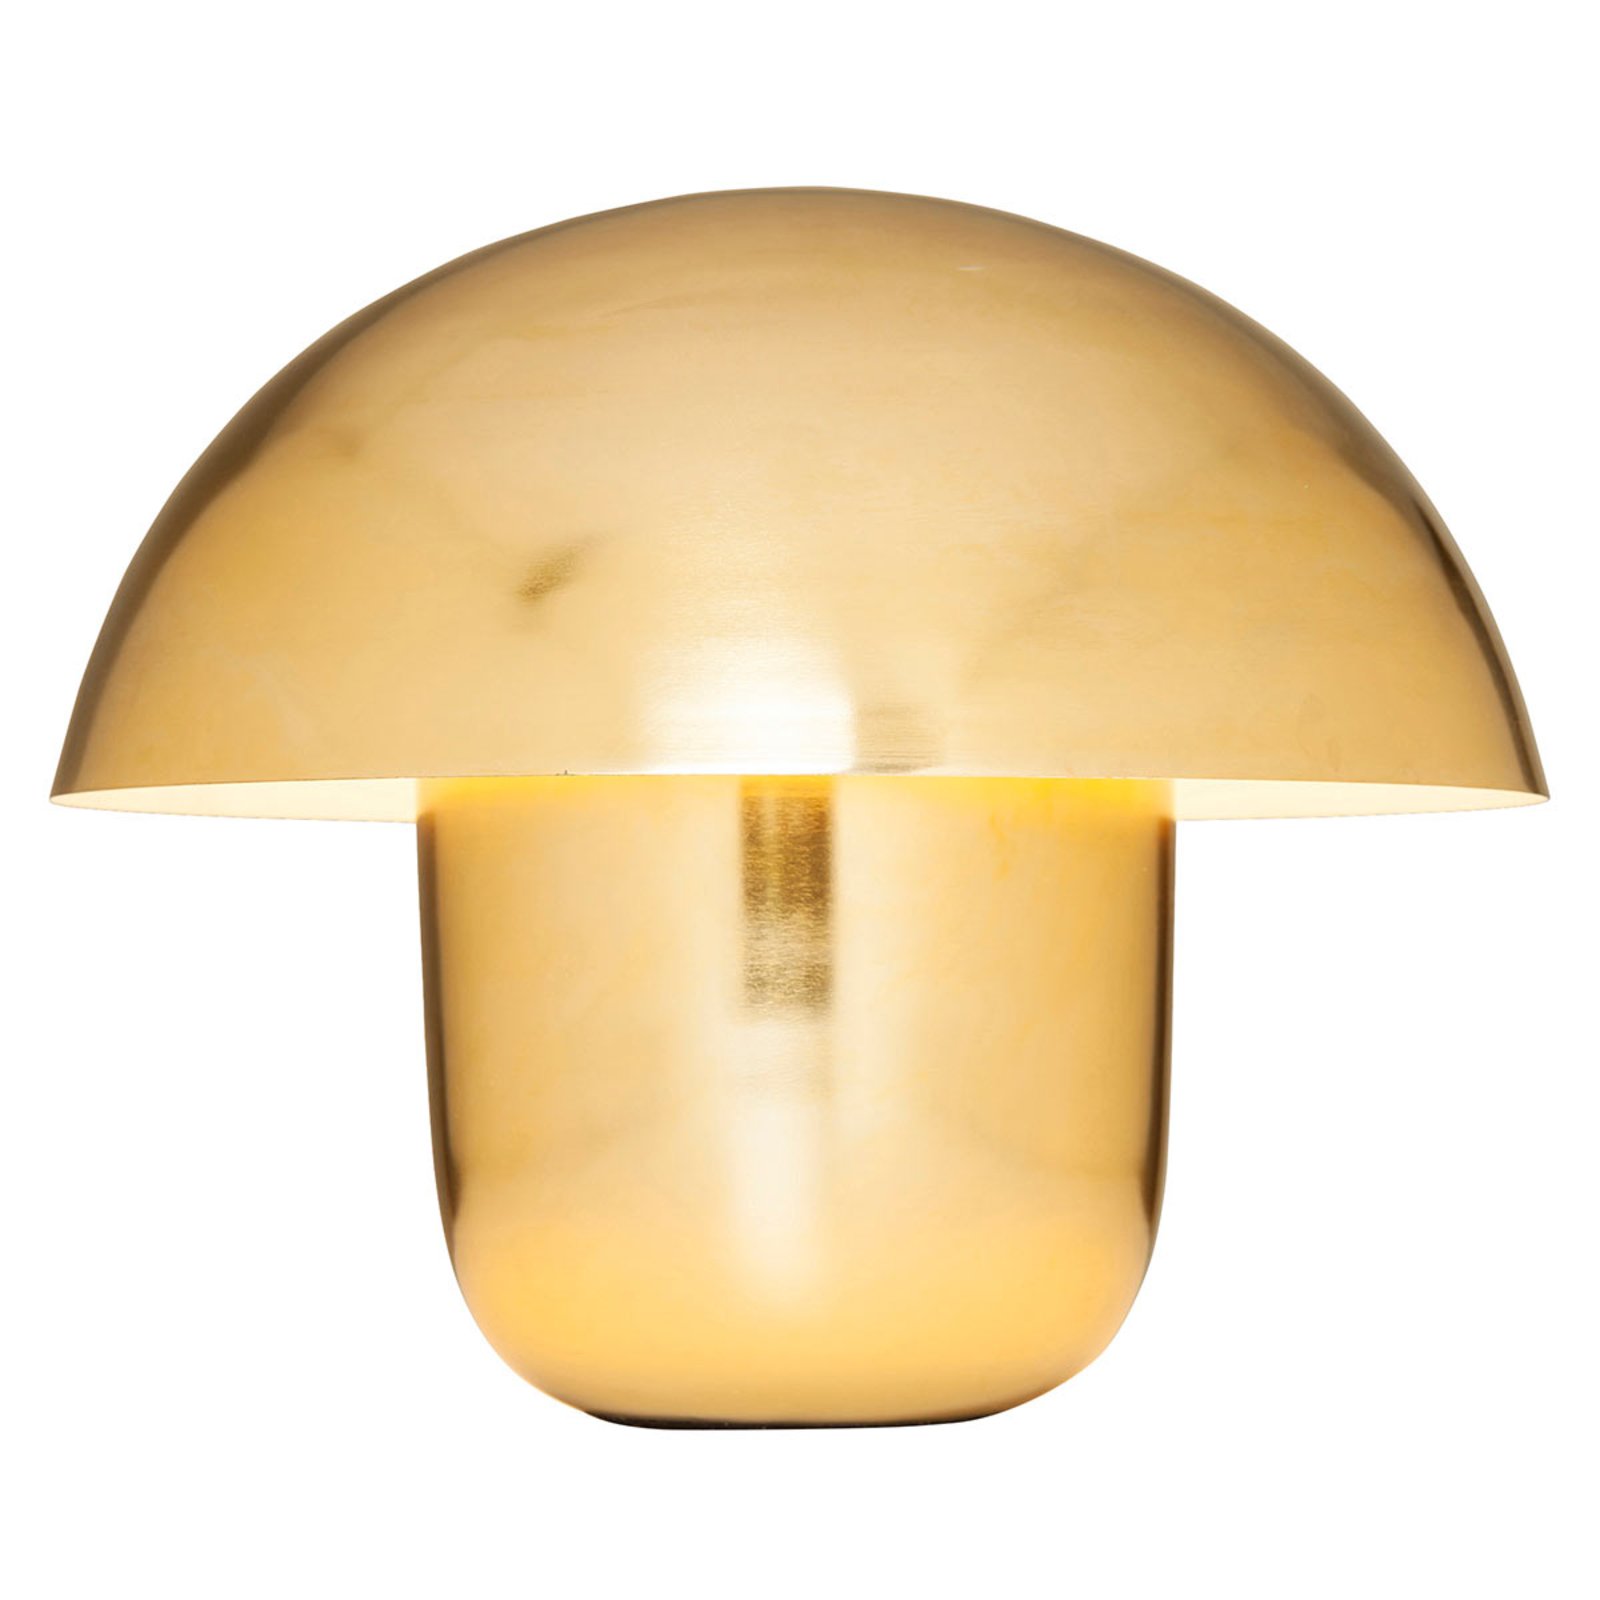 KAREN Mushroom - Lampa stołowa w kształcie grzyba, złota